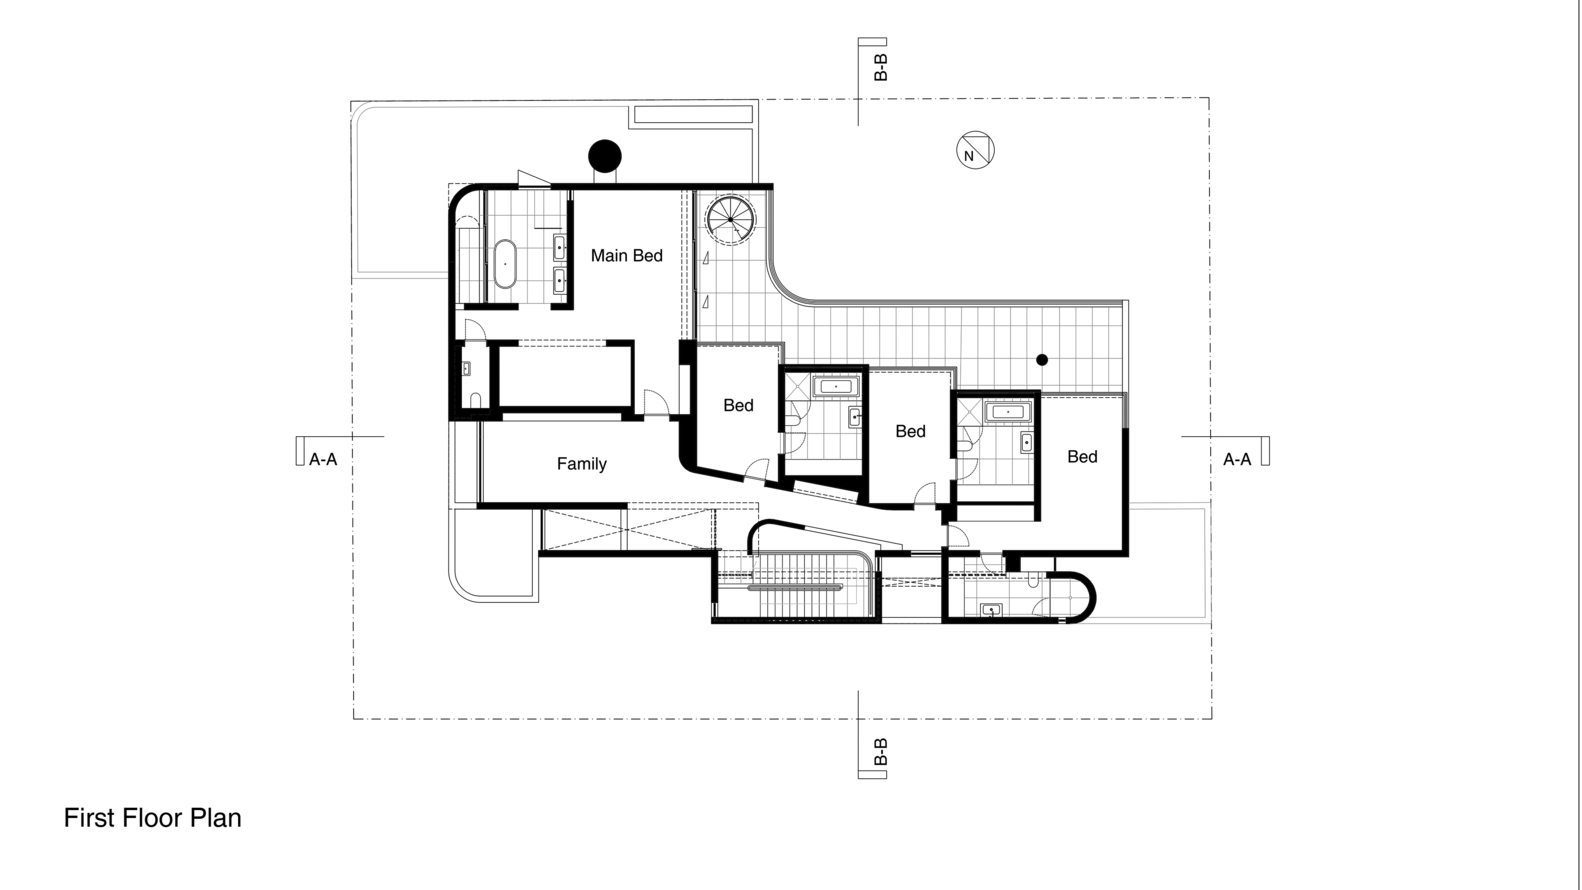 023_216_OVD_First_Floor_Plan.jpg